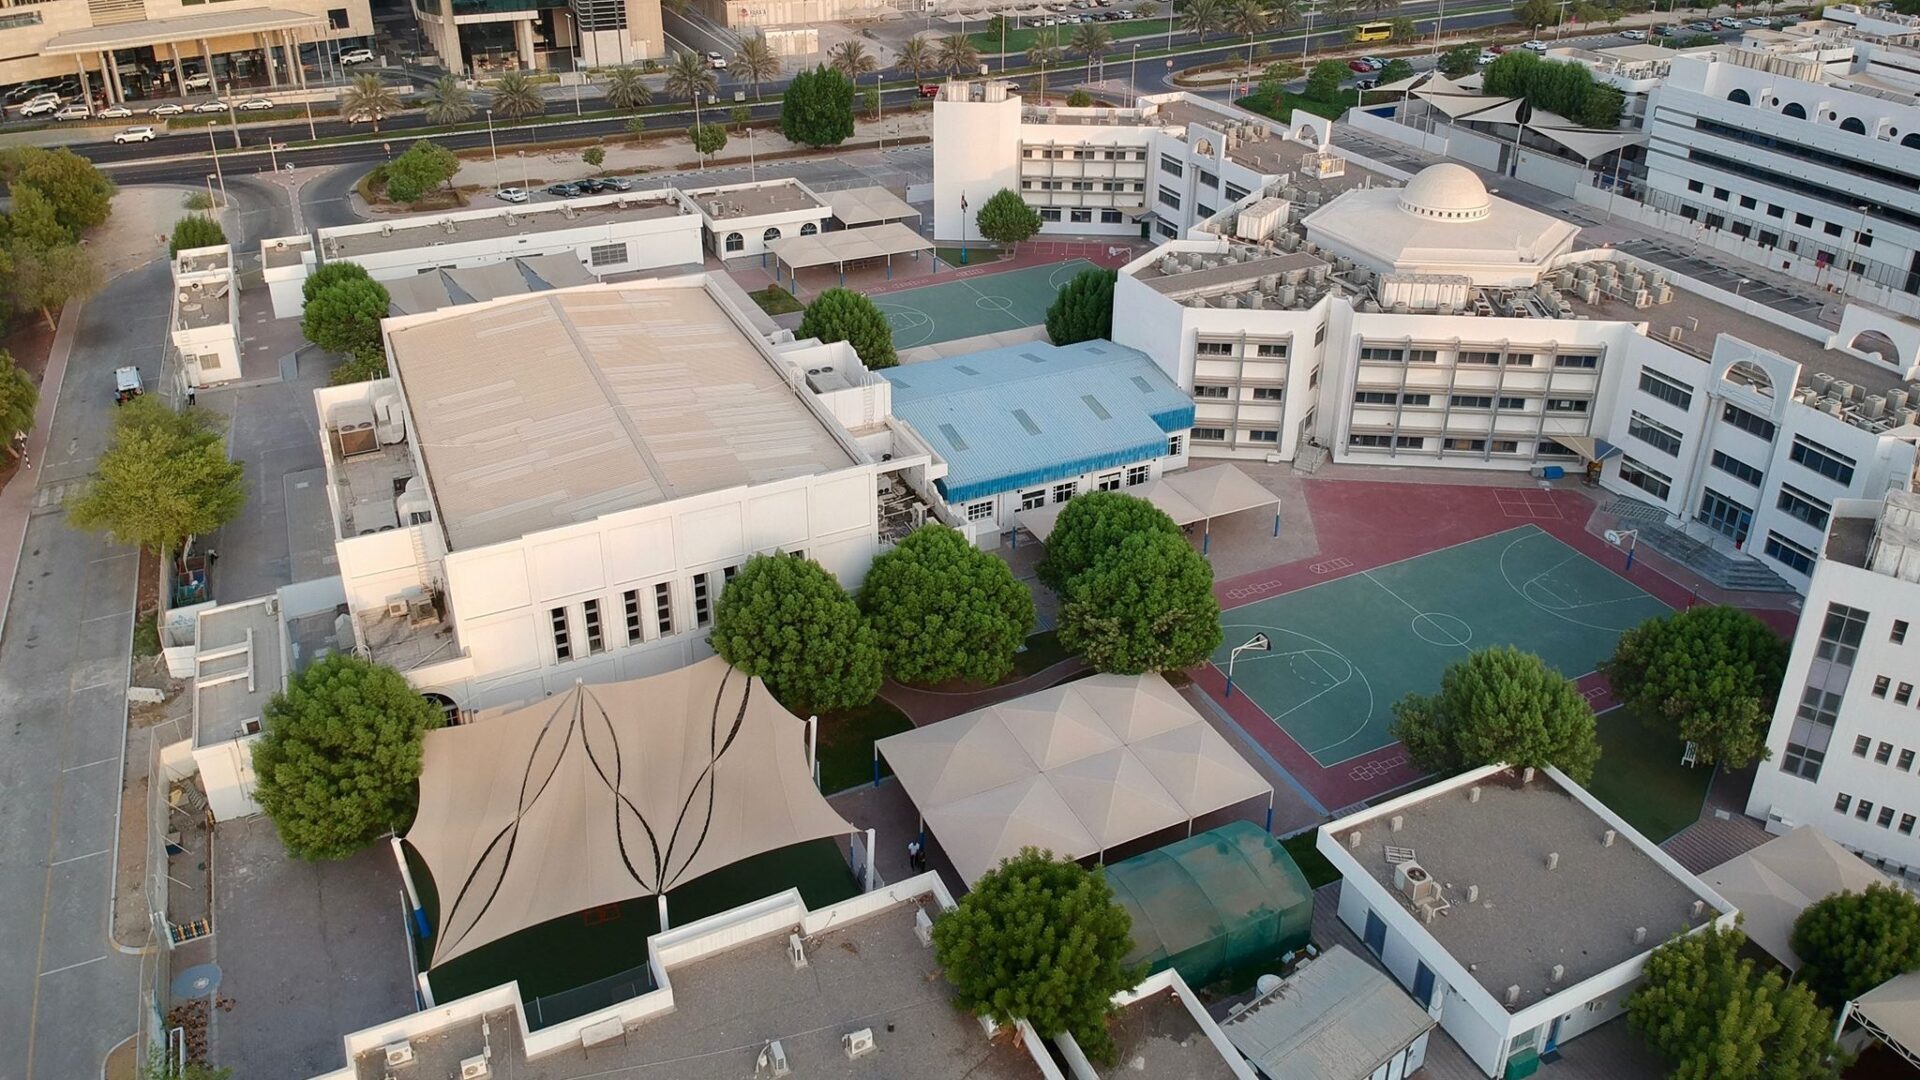 American International School in Abu Dhabi